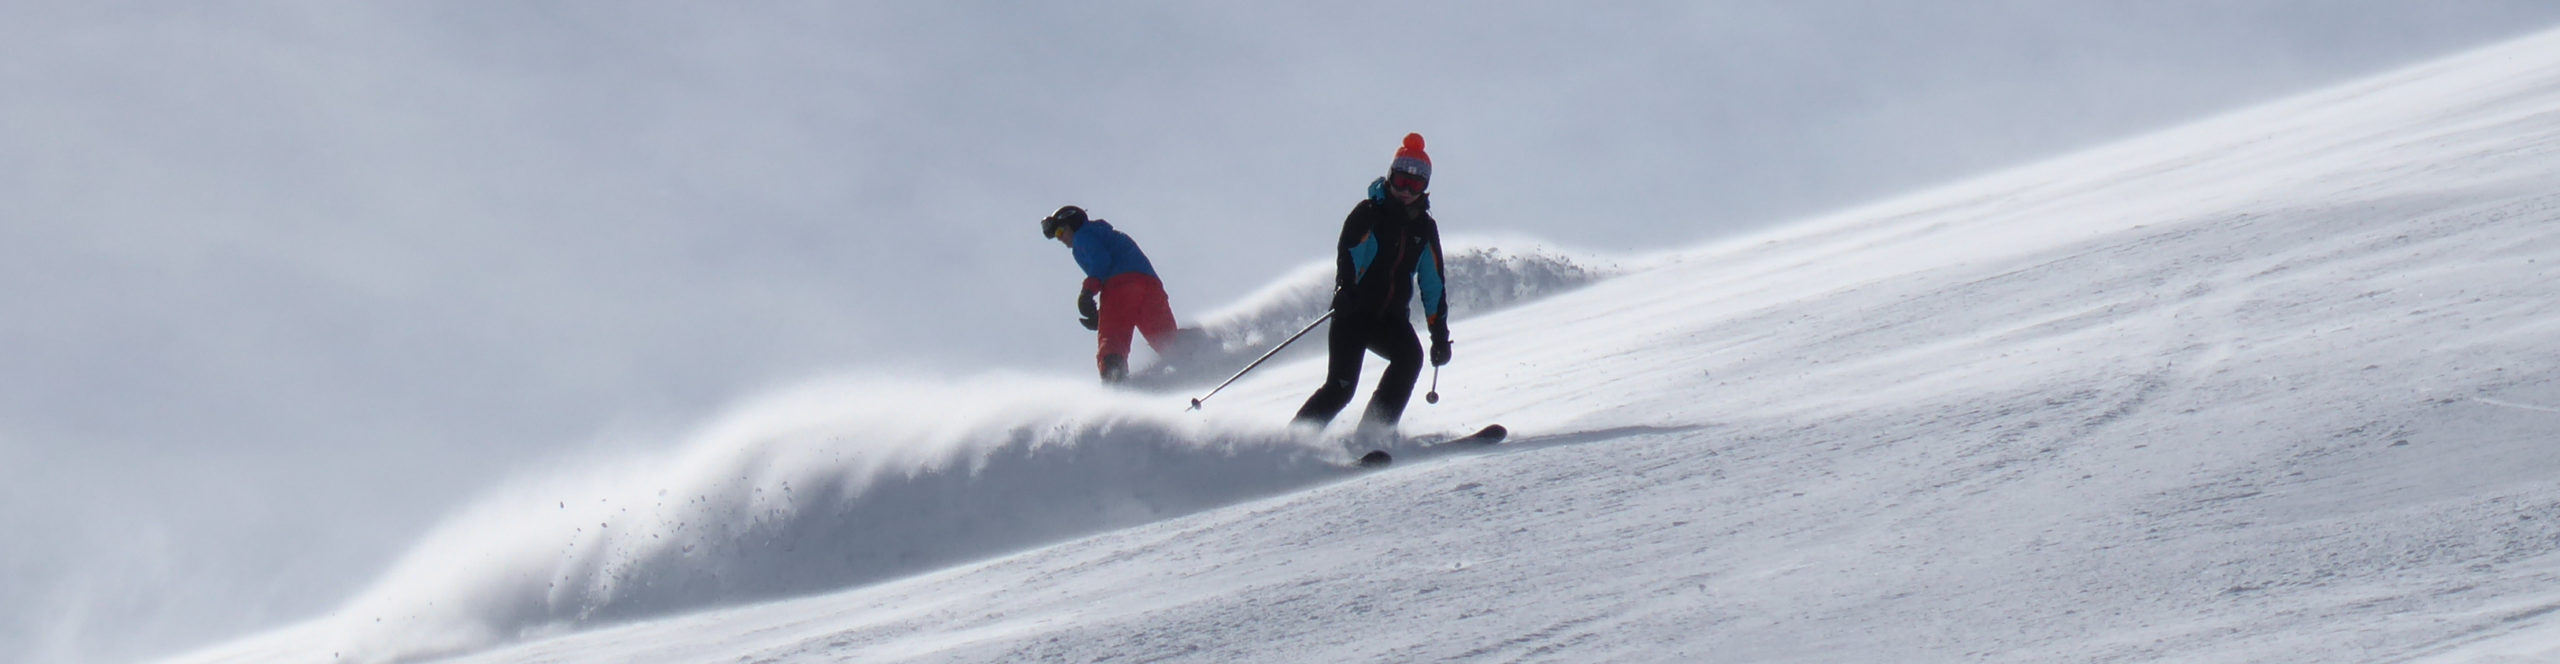 SERFAUS – FISS – LADIS – SchneeSPARTag inkl. Skipass – Guter Schnee zu gutem Preis!!! 